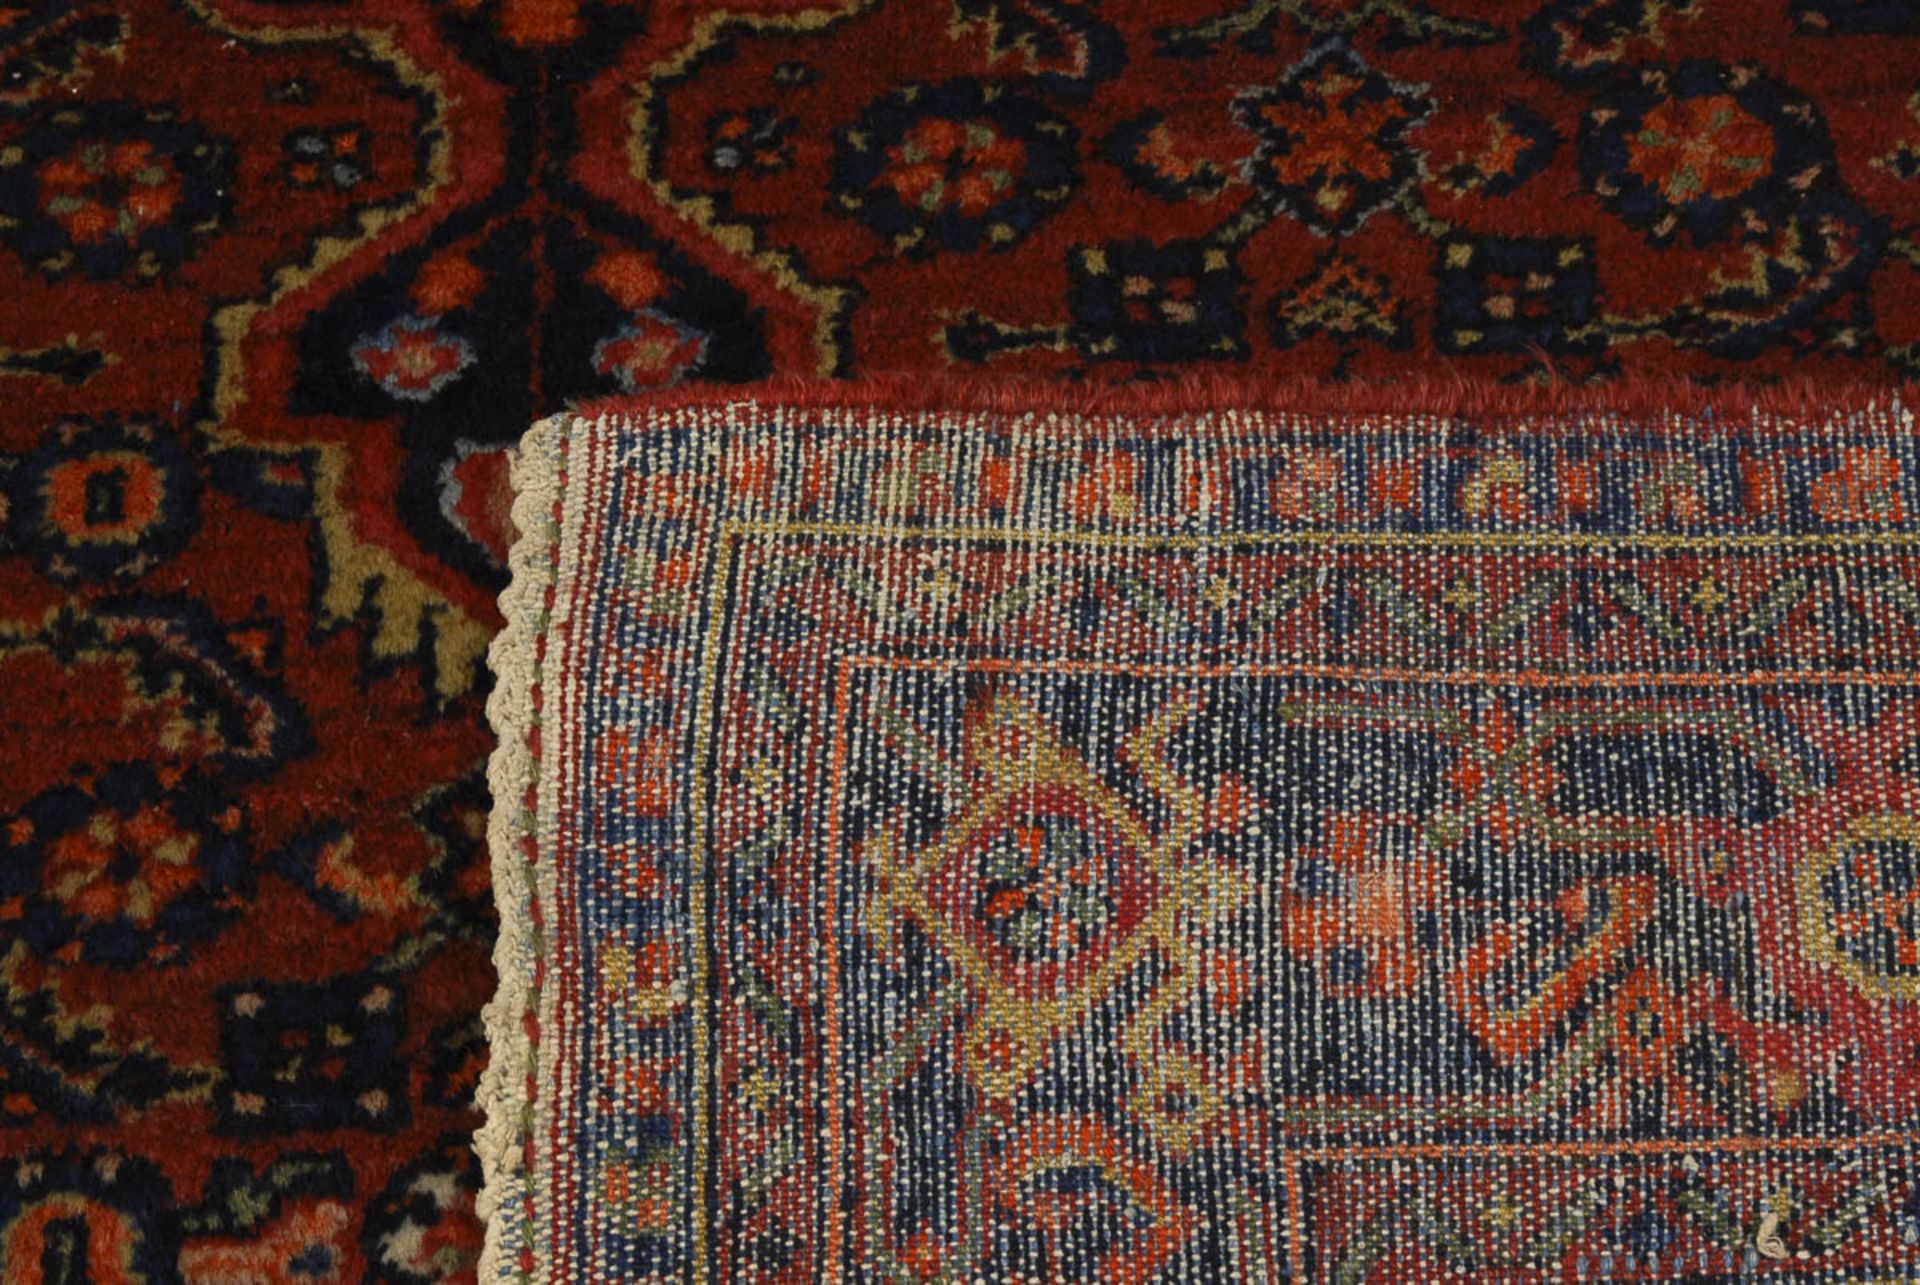 Medaillonteppich mit Herati-Dekor.Bidjar-Gebiet/Nordwestpersien, 1. H. 20. Jh. Wolle, handgeknüpft. - Bild 2 aus 2